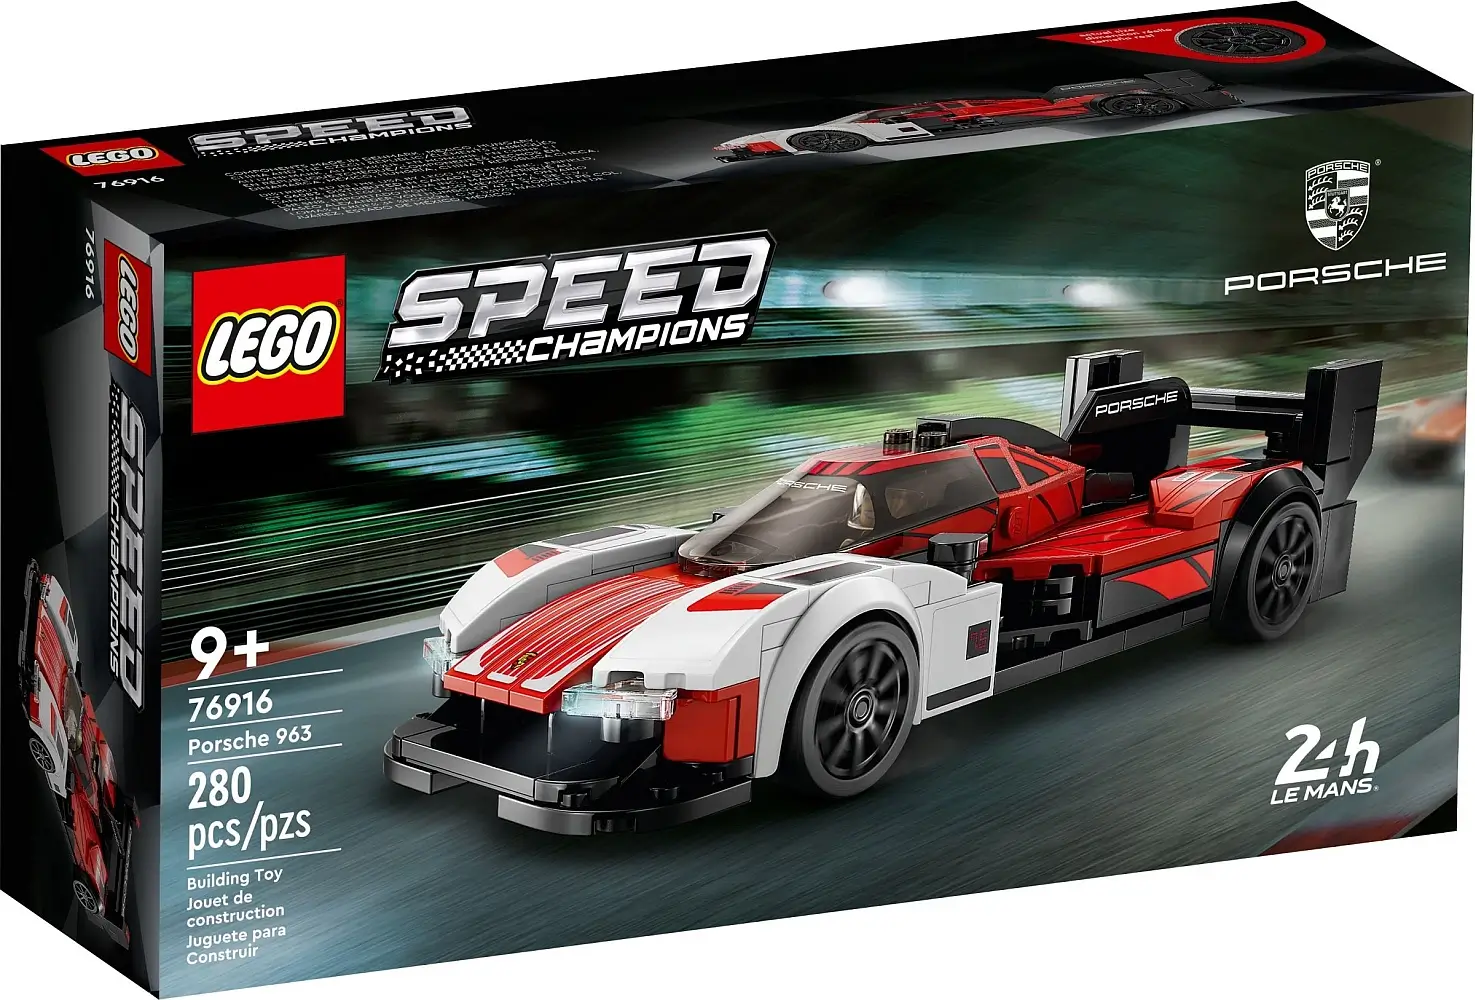 Pudełko zestawu 76916 z serii LEGO® Speed Champions – Porsche 963